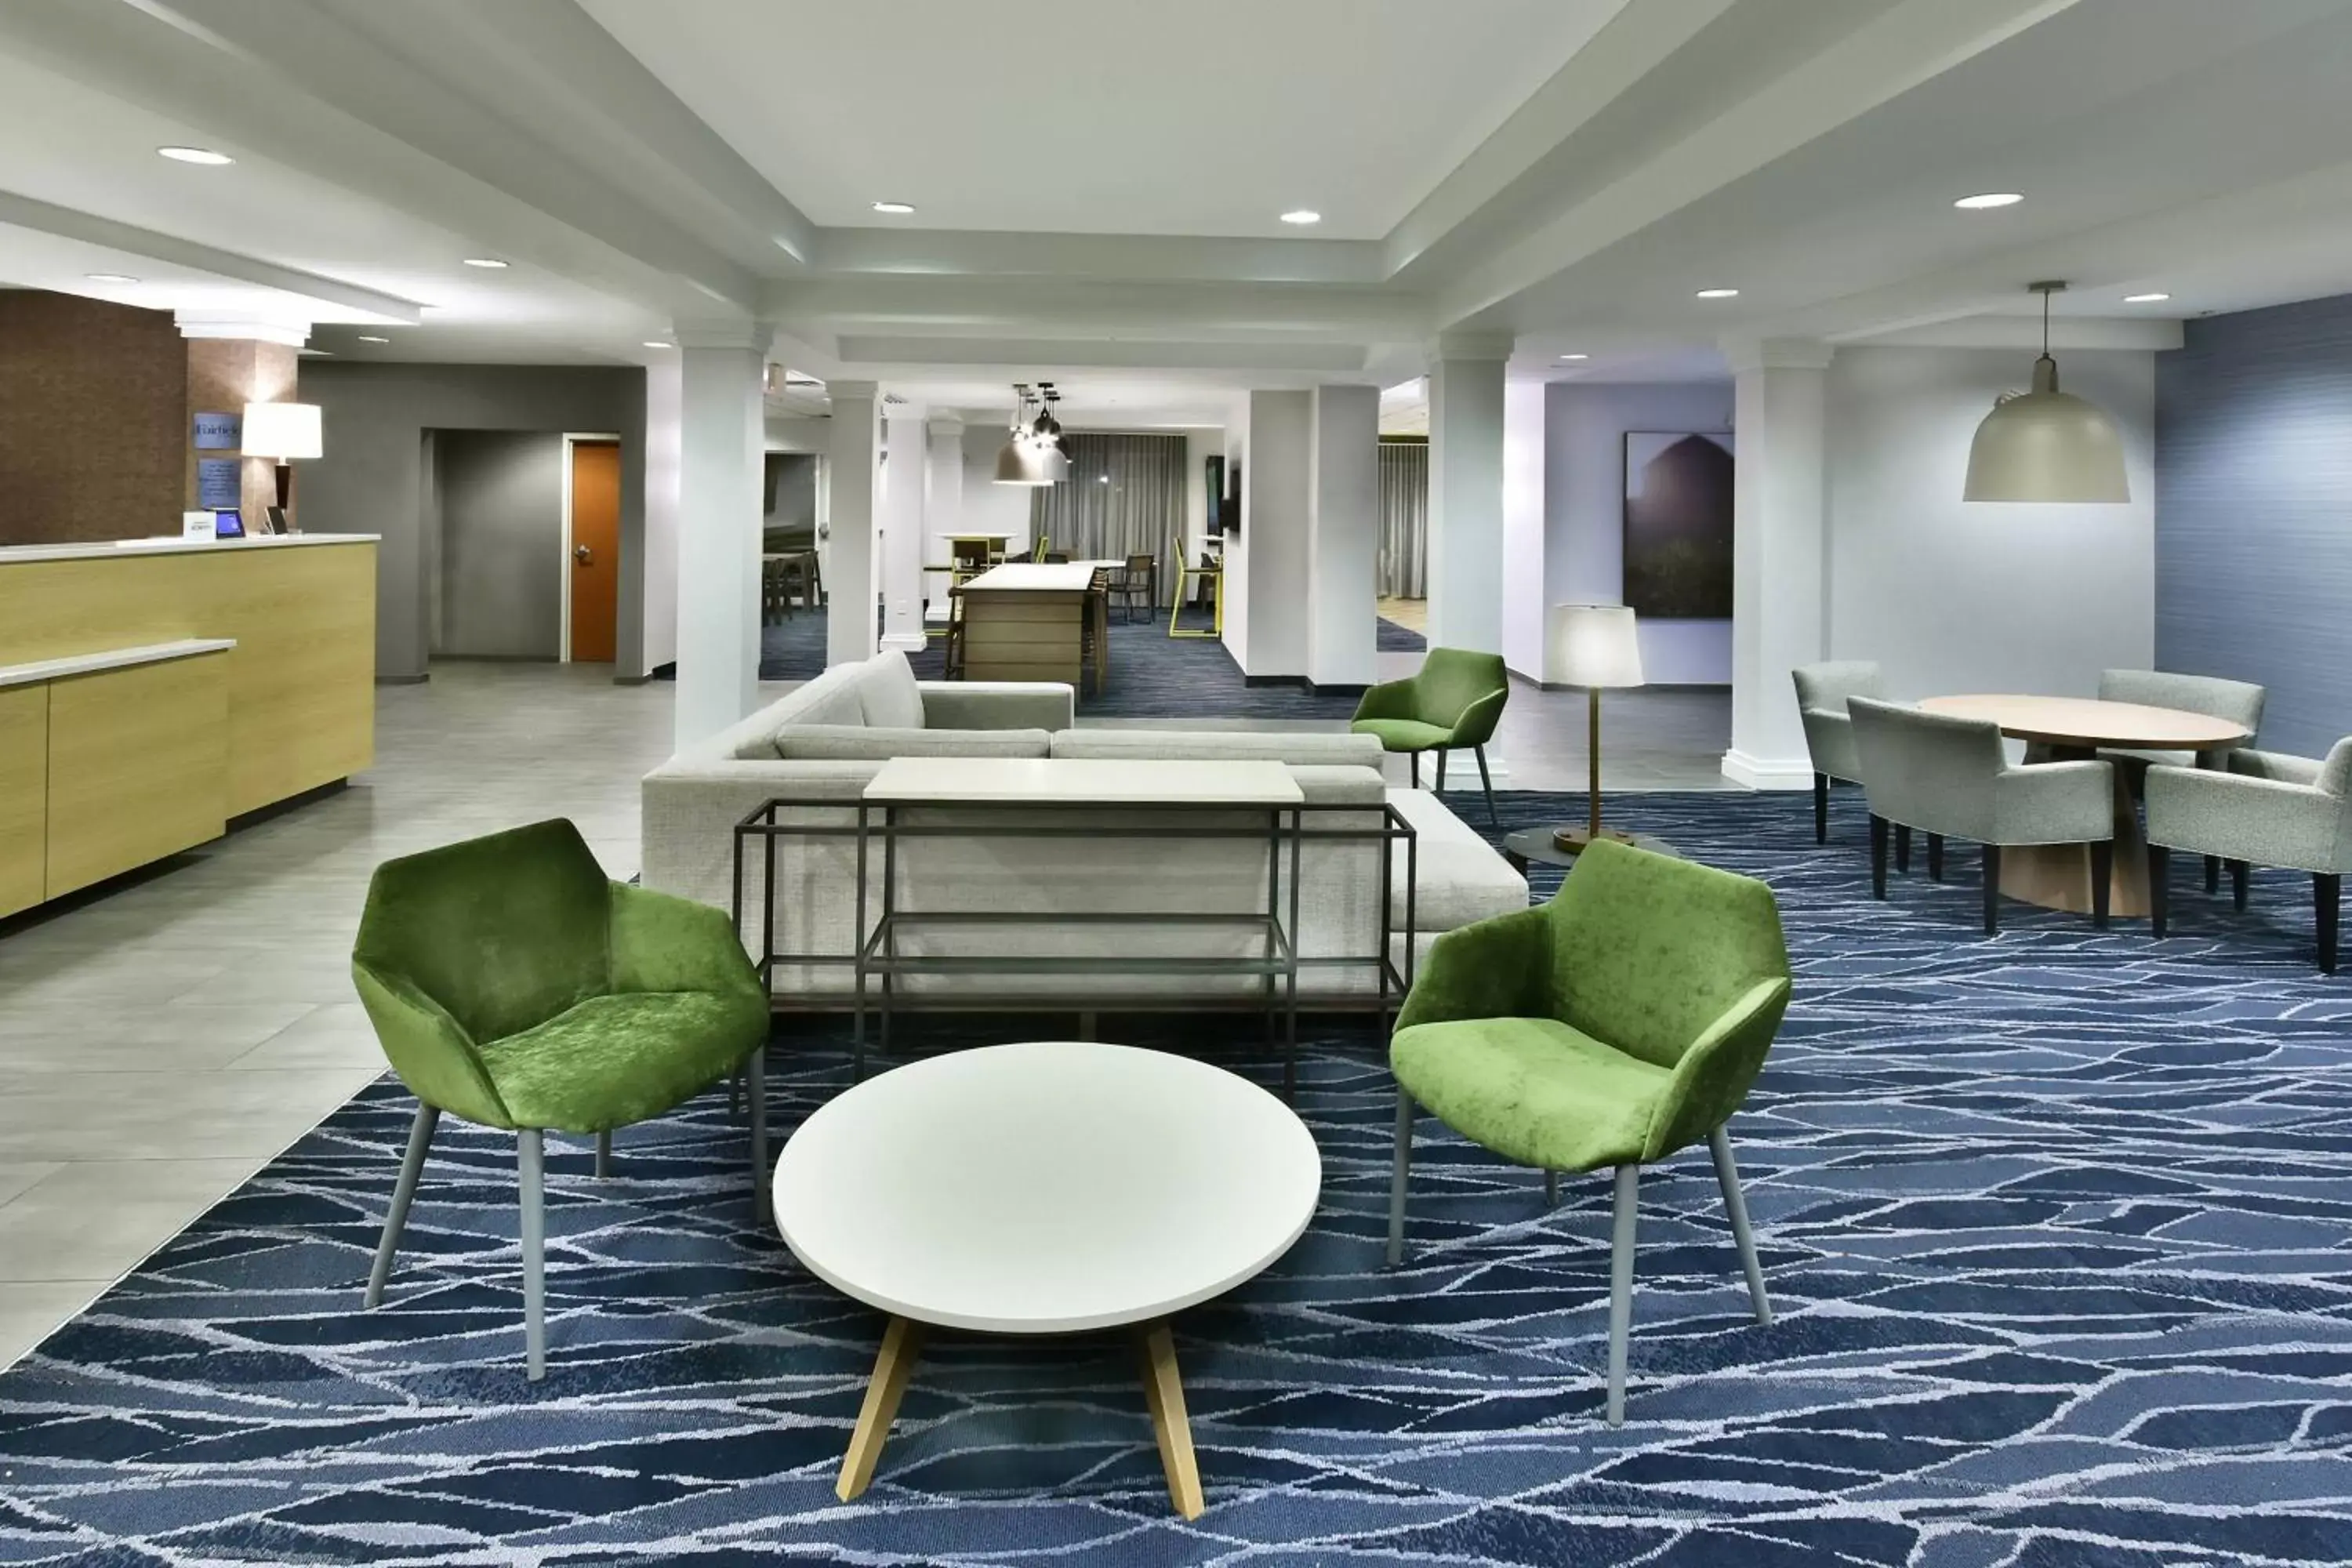 Lobby or reception in Fairfield Inn & Suites by Marriott Richmond Innsbrook